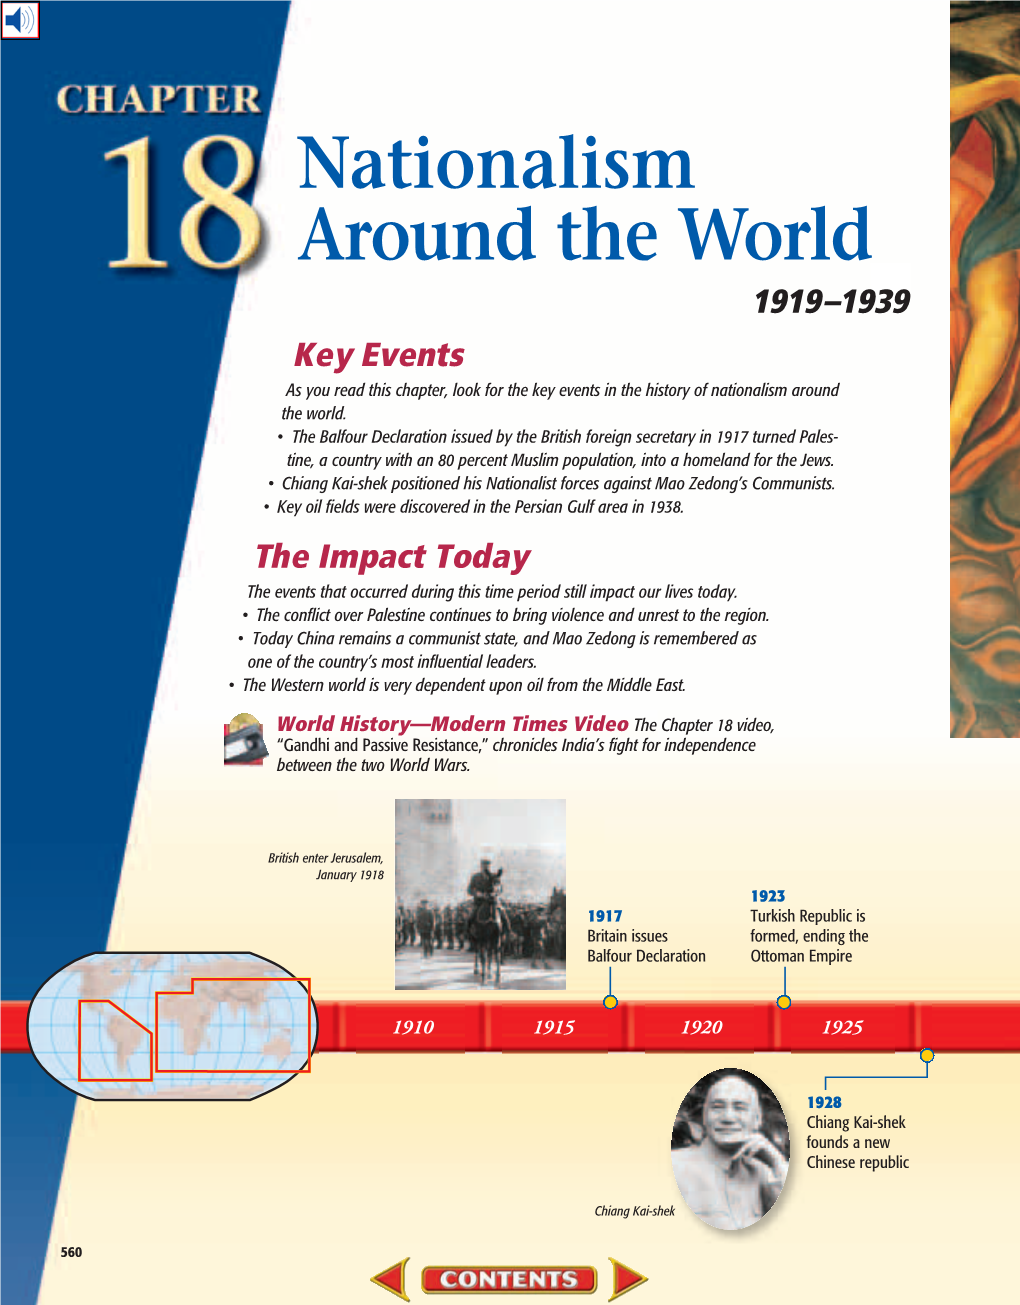 Nationalism Around the World, 1919-1939